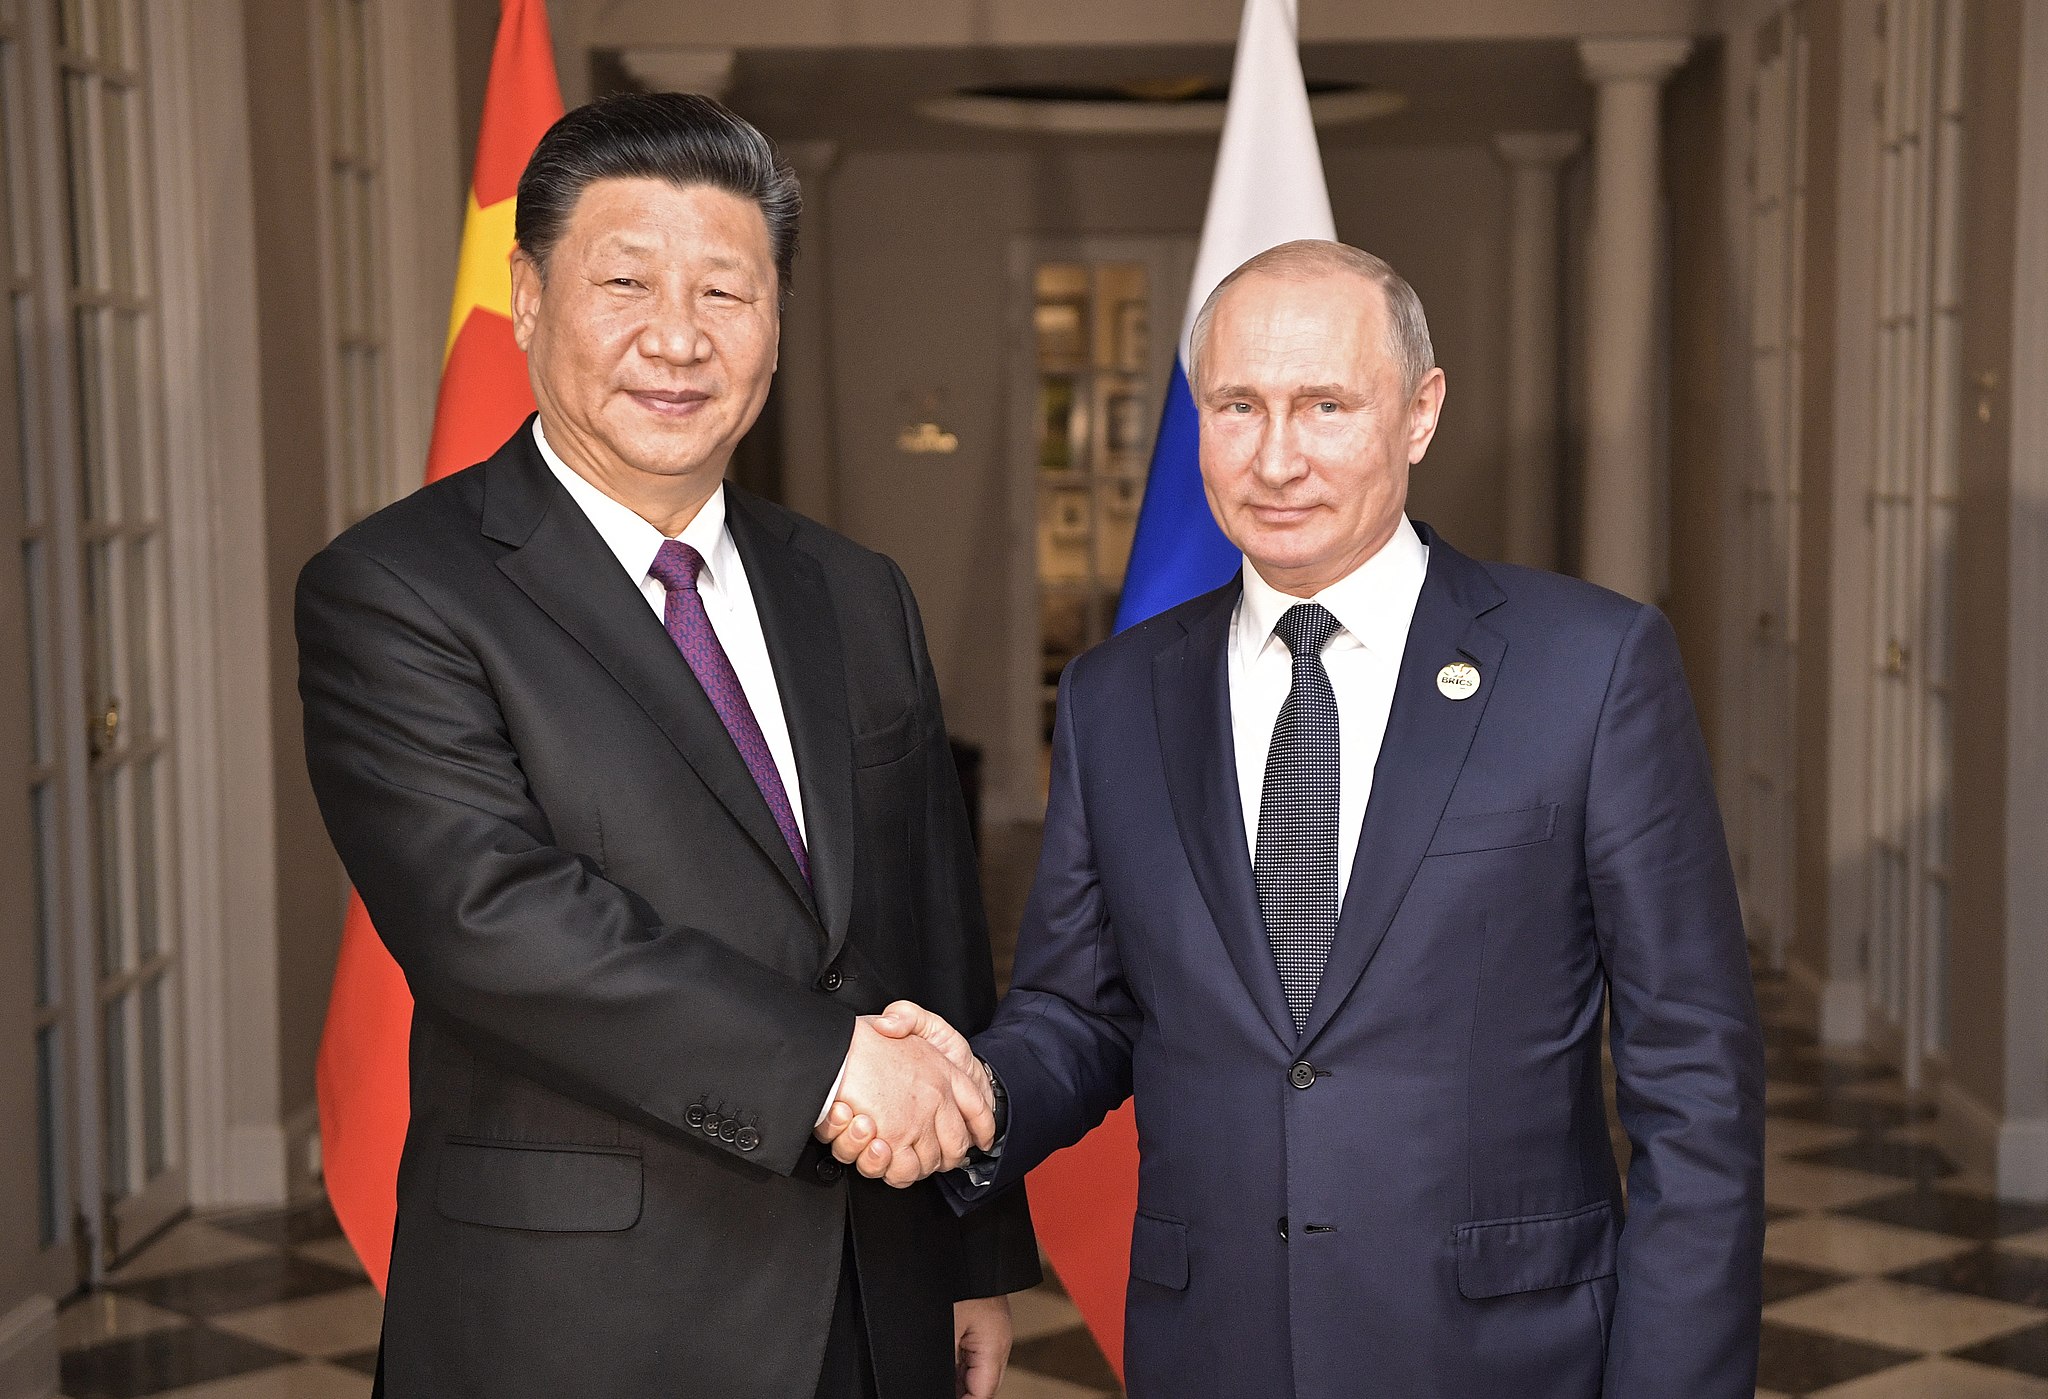 Bild: Kremlin.ru, CC BY 4.0, Vladimir Putin and Xi Jinping, 26 july 2018, via Wikimedia Commons (keine Änderungen vorgenommen)